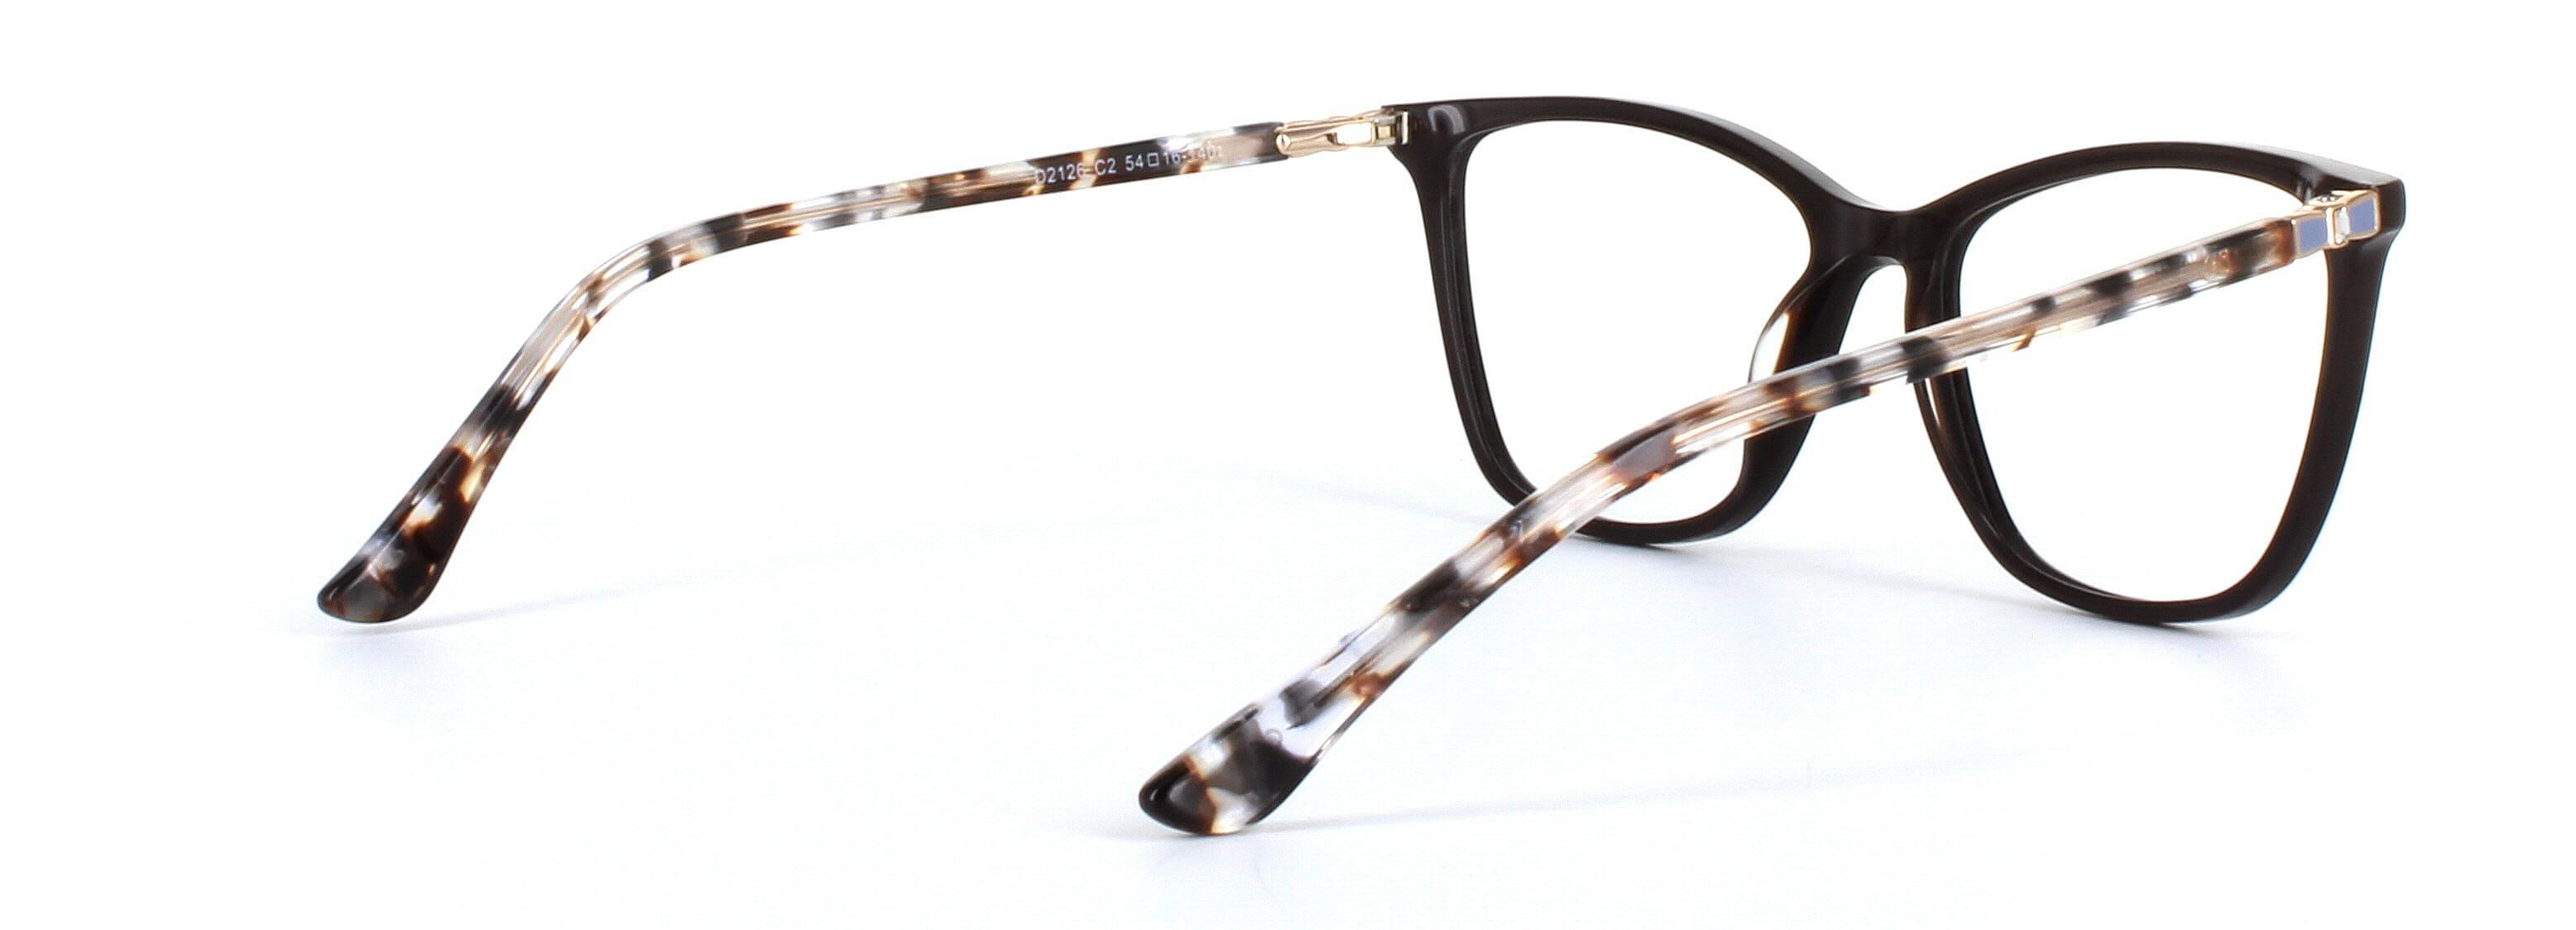 Gloria Brown Full Rim Cat Eye Acetate Glasses - Image View 4